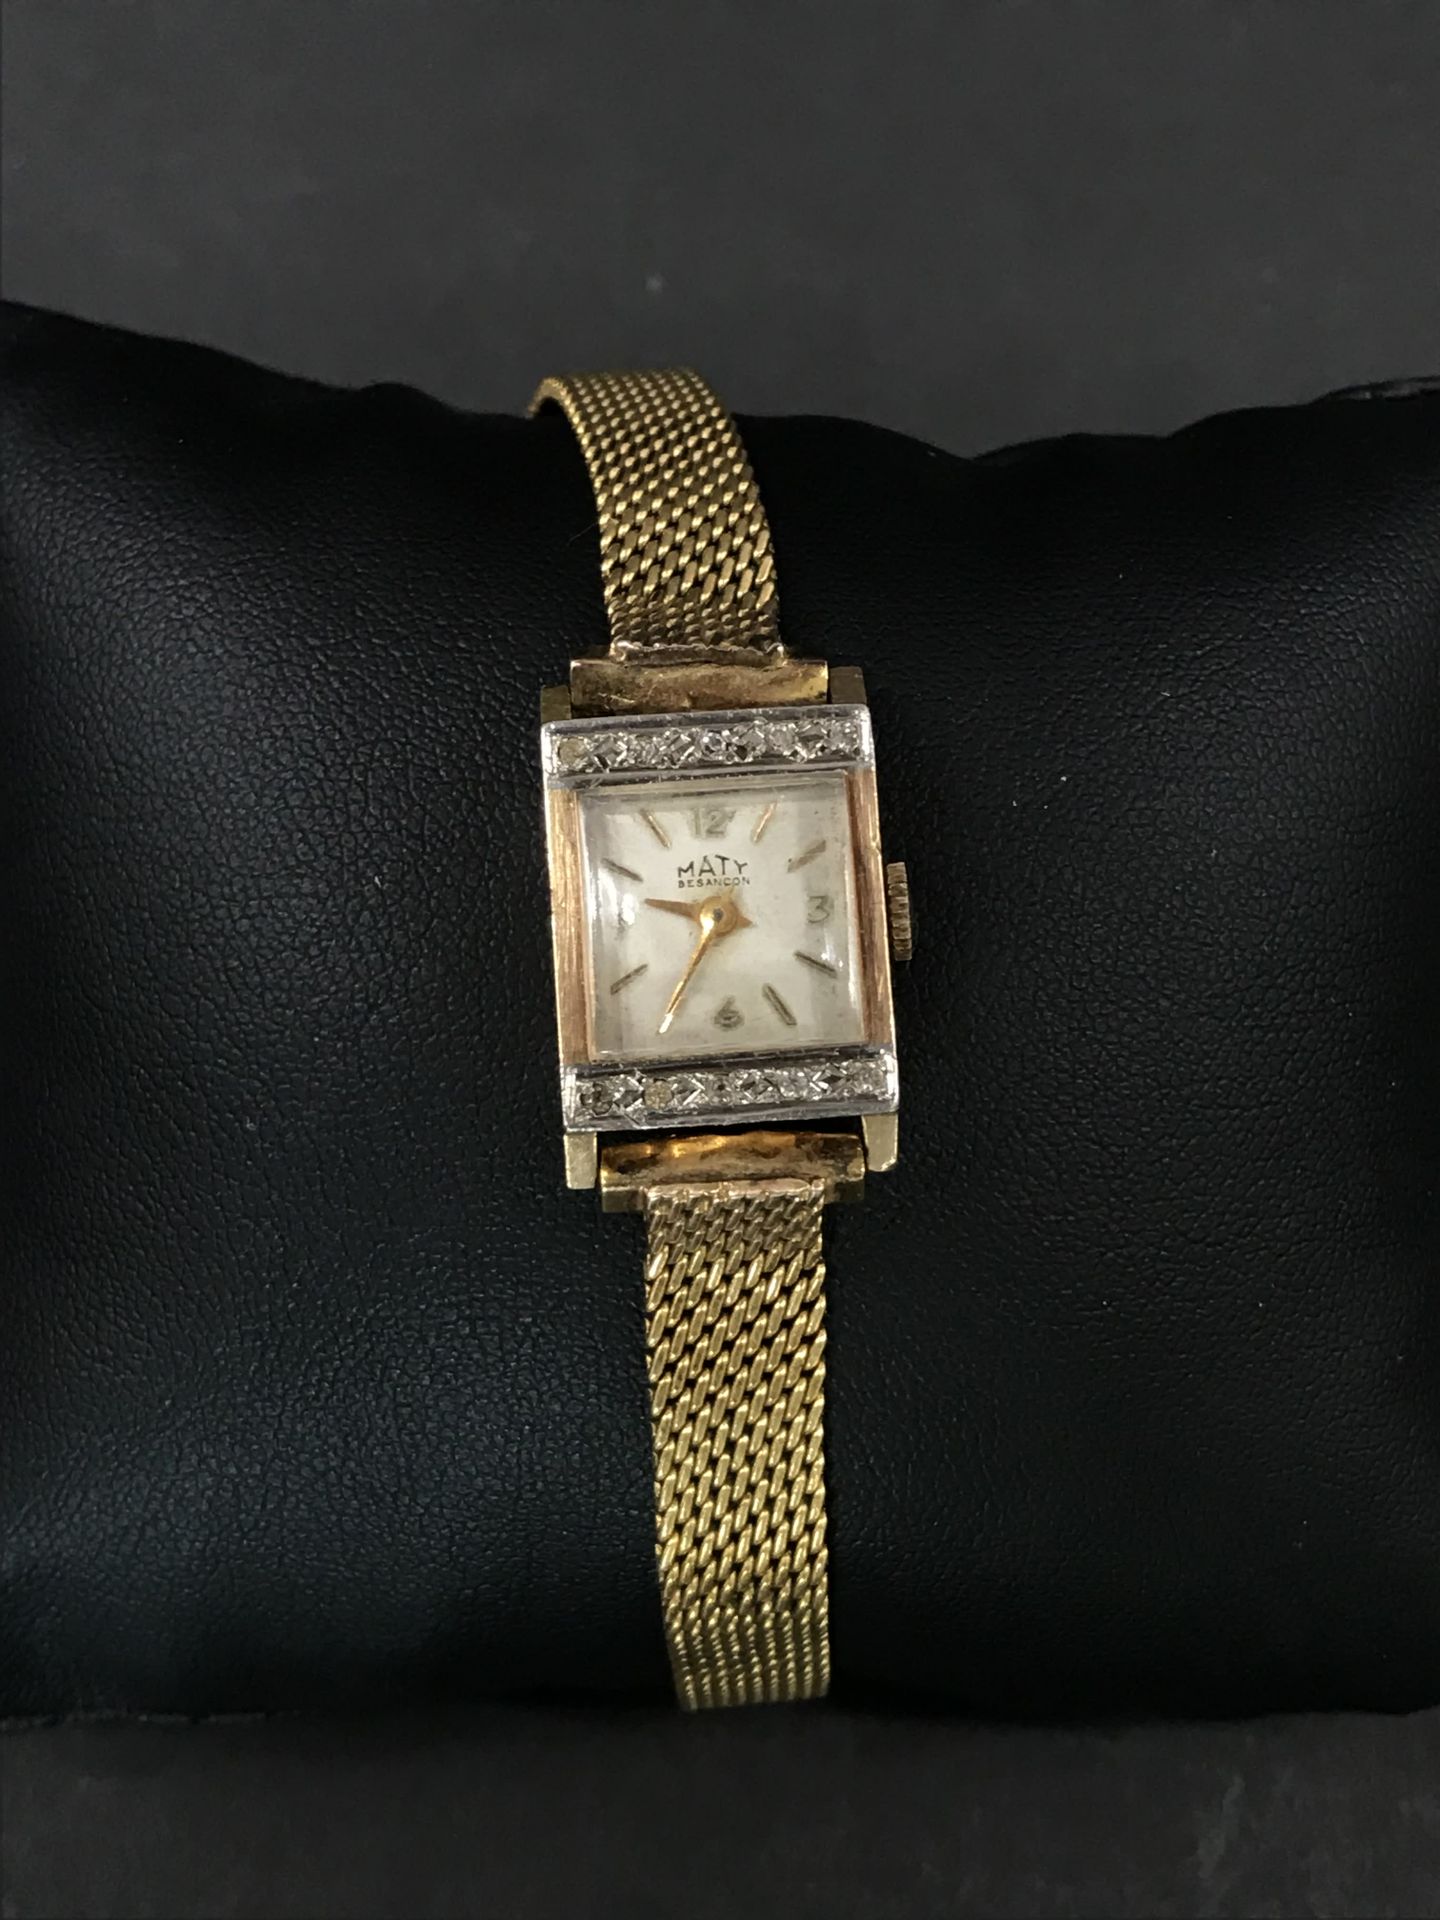 Null 马蒂女士手表

黄金表壳，镶嵌小钻石

标有一个鹰头。

不含装置的重量：6.60克